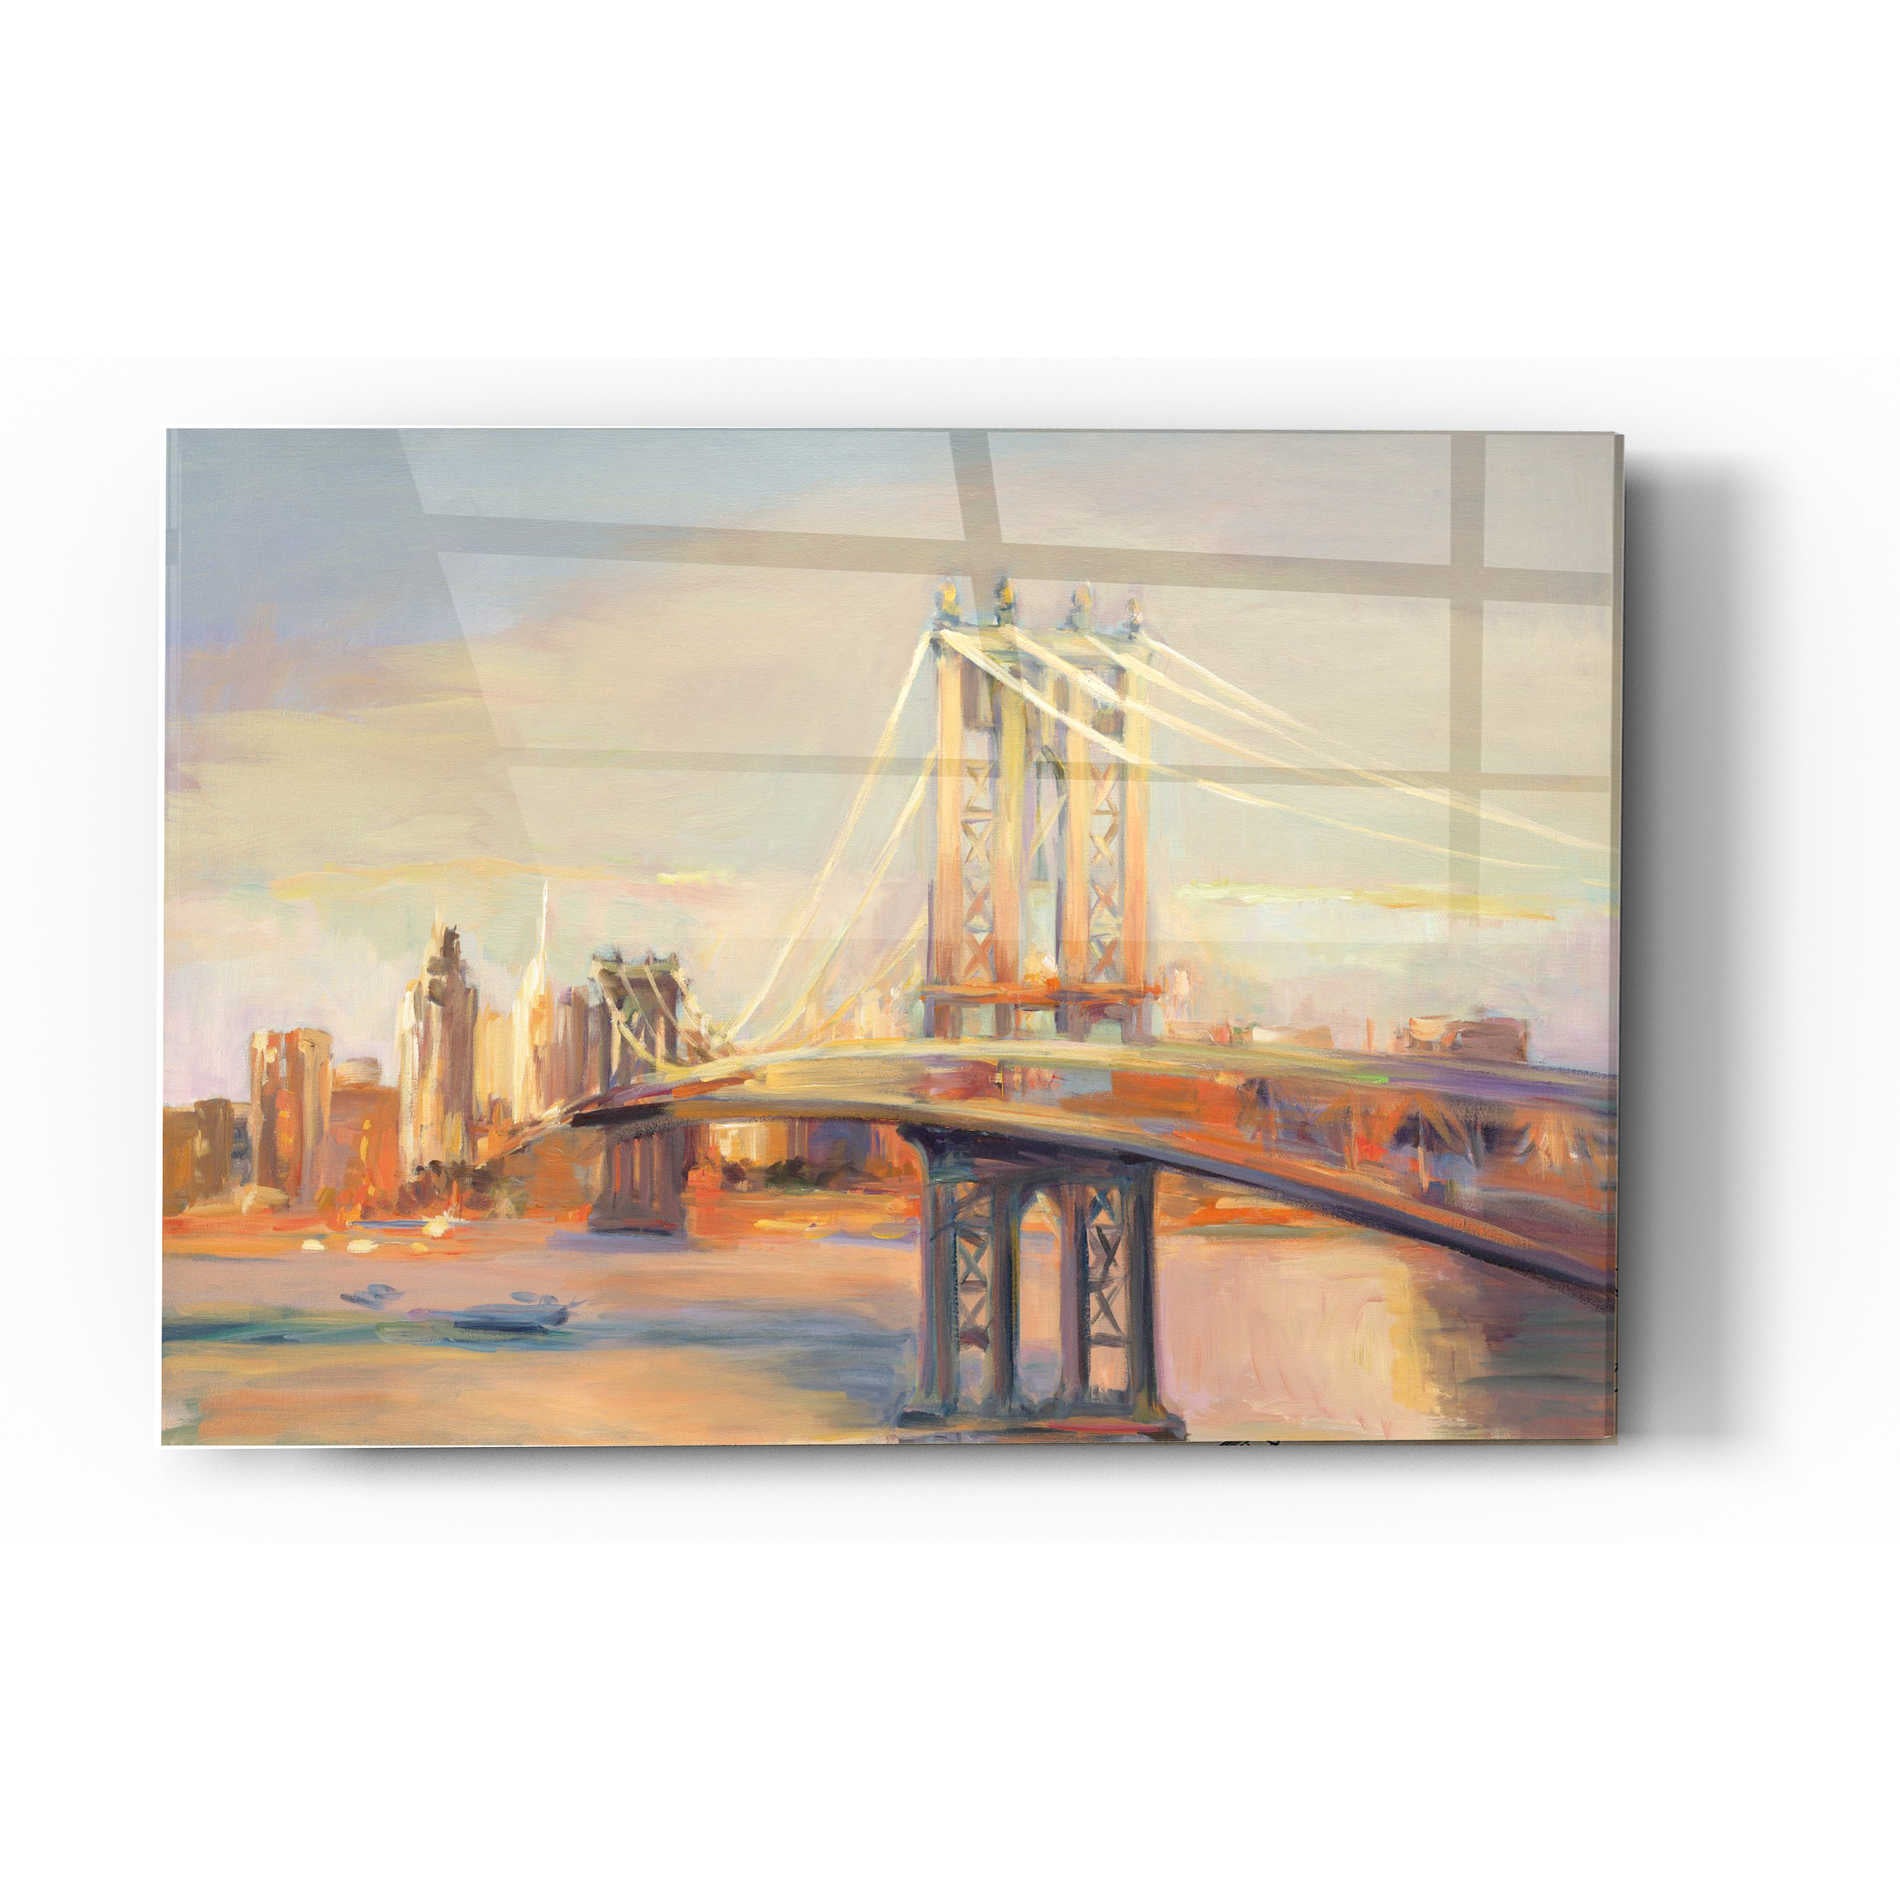 Epic Art 'Manhattan Reflection' by Marilyn Hageman, Acrylic Glass Wall Art,16x24